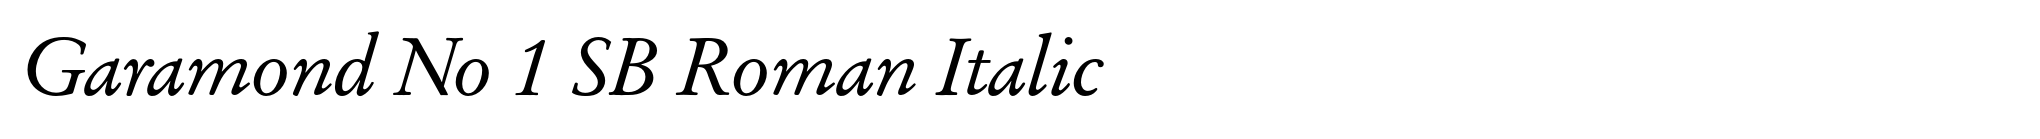 Garamond No 1 SB Roman Italic image